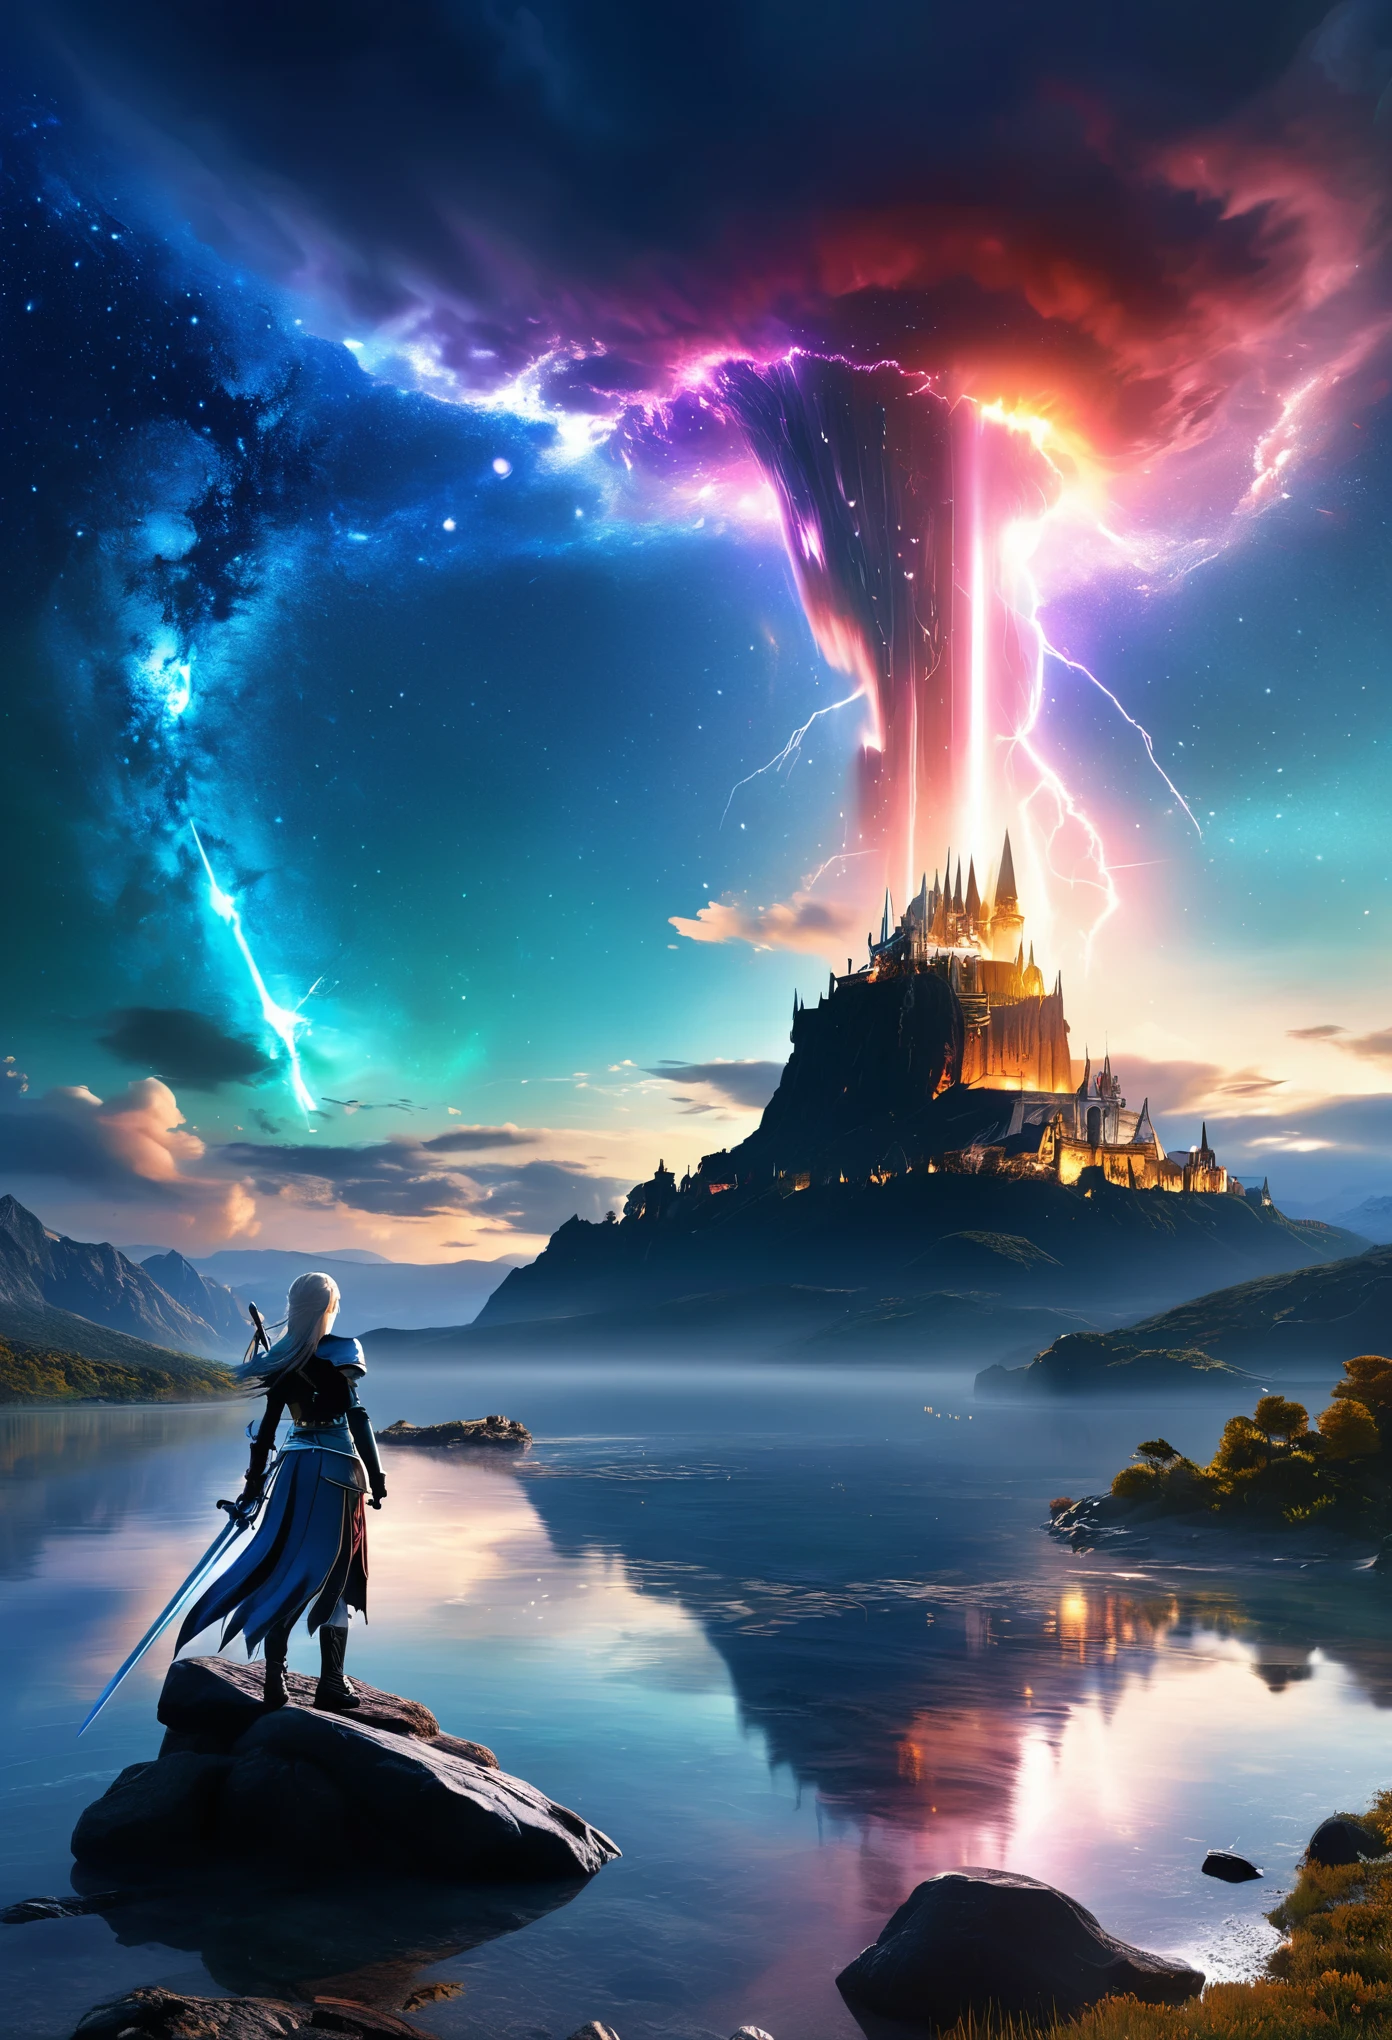 (8k, la plus haute qualité, chef-d&#39;œuvre, Style Final Fantasy: 1.2), (Irréaliste, photoréaliste: 1.37), (une dame mage debout au bord du lac, énorme buste rebondissant, avec l&#39;épée avec le feu, Son épée brille dans les cieux:1.1), paysage de rêve, fantaisie, Des paysages irréels, Super détaillé, Château médiéval volant, Île flottante dans le ciel, Tourbillon de lumière à sept couleurs, (流星のM.Un oiseau brillant à longue queue vole dans le ciel:1.3), Aurore, Des éclairs intenses, voie Lactée, lumière complexe, M.々Lumière colorée, grand lac, Ciel étoilé reflété à la surface du lac, D&#39;innombrables étoiles brillantes, météores, De nombreux météores, Aura de, (Un pilier de lumière émanait du sol:1,2), 複雑な文M.cercle magique,